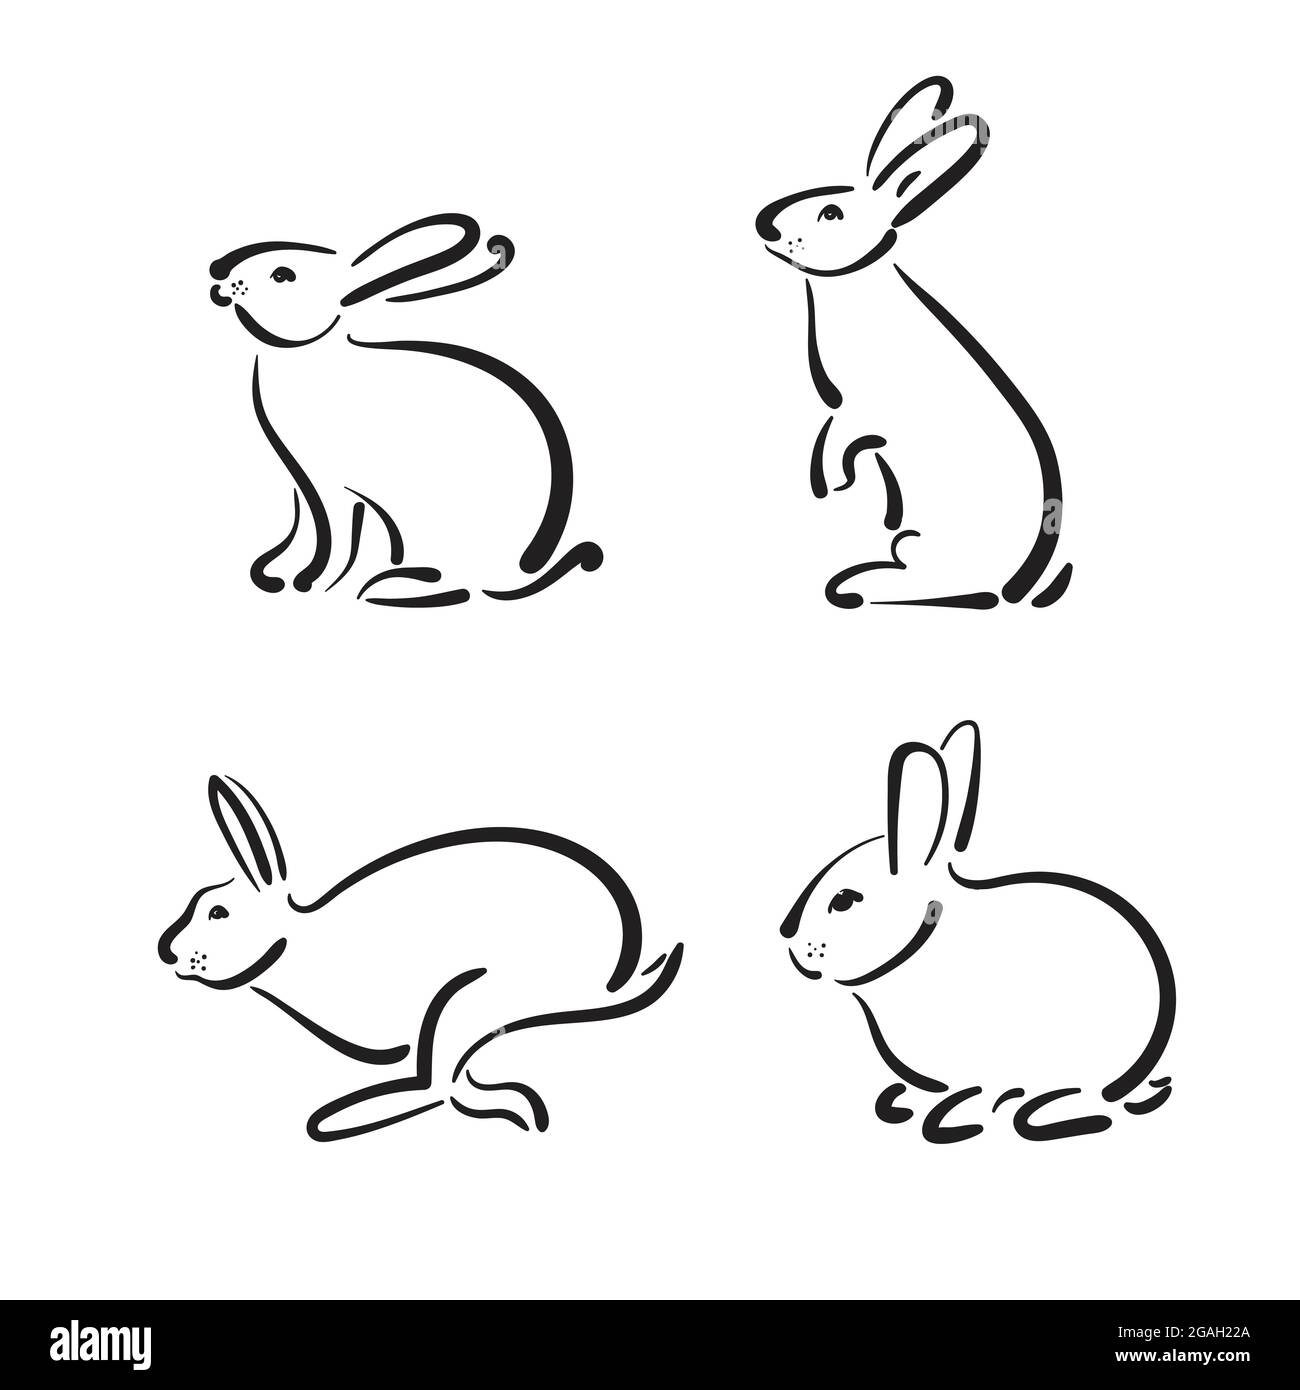 Gruppo vettoriale di coniglio disegnato a mano su sfondo bianco. Animali selvatici. Illustrazione Vettoriale